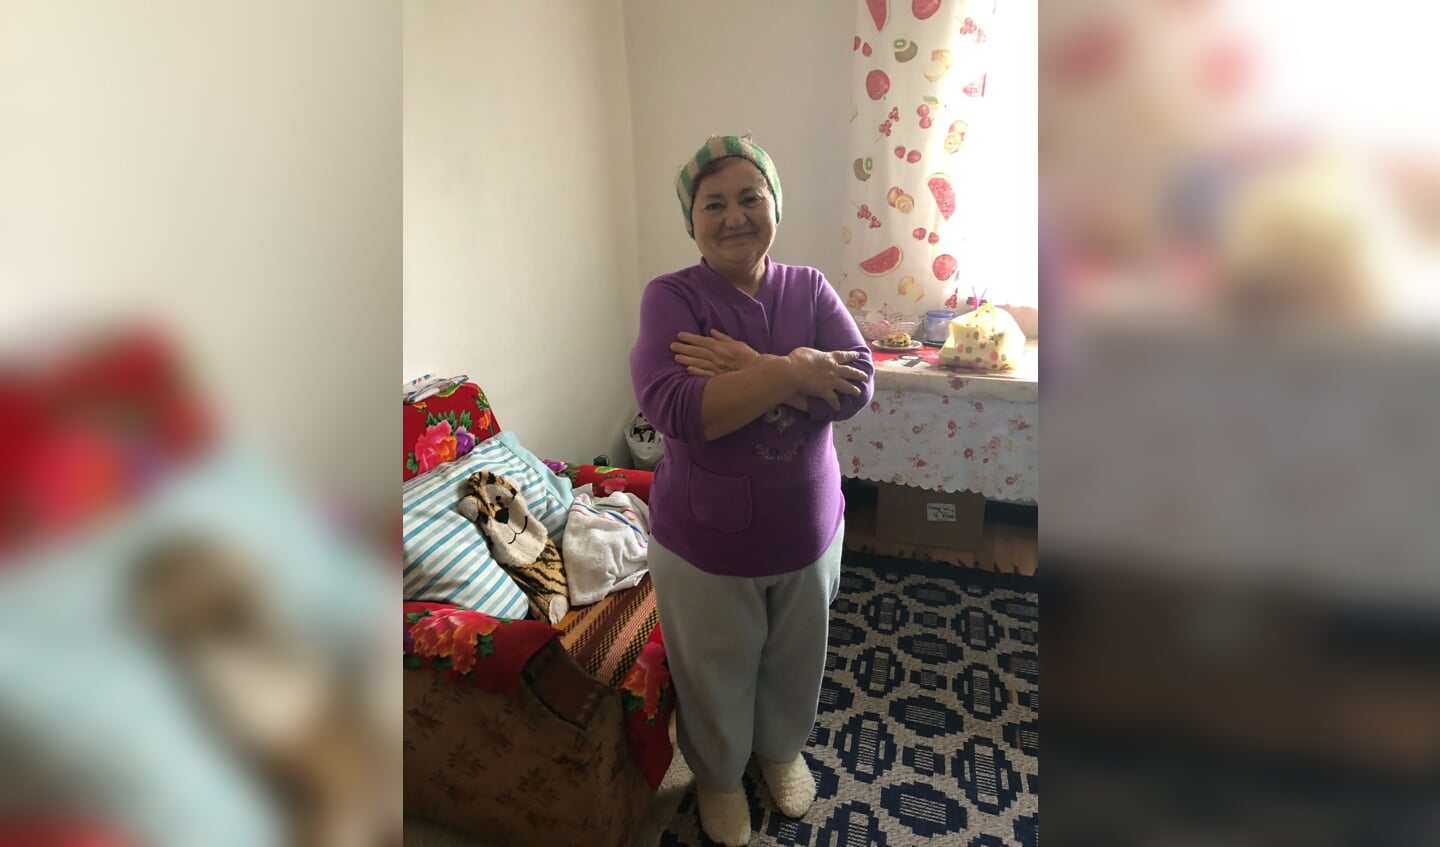 Deze Roemeense vrouw, die in het hulpproject zit, krijgt maaltijden via het project Meals on Wheels.